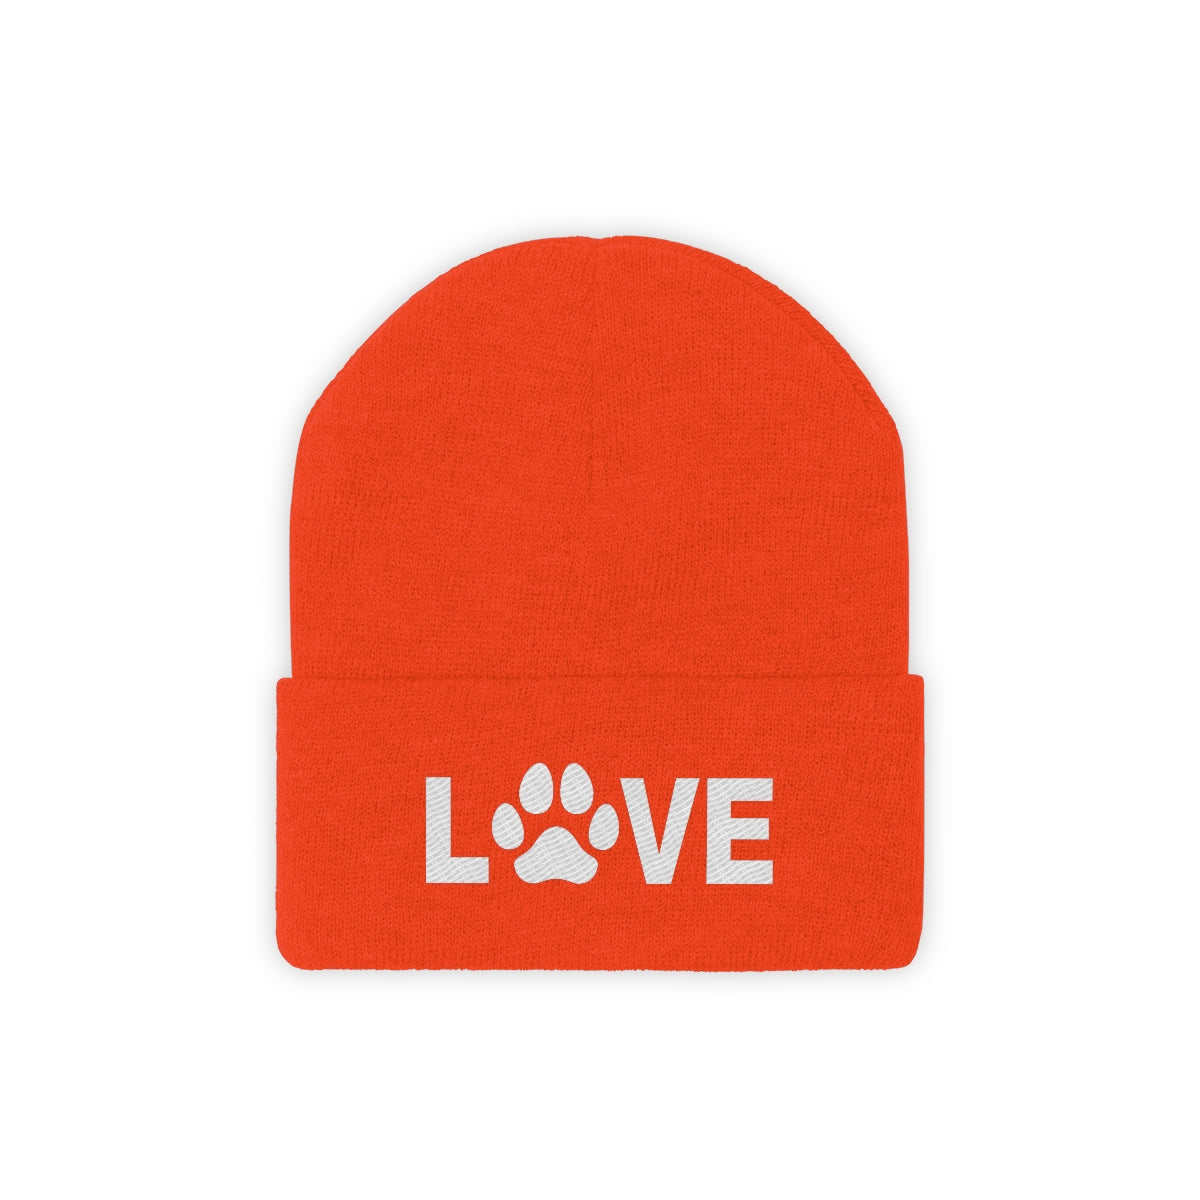 Love Pawprint Knit Ski Cap